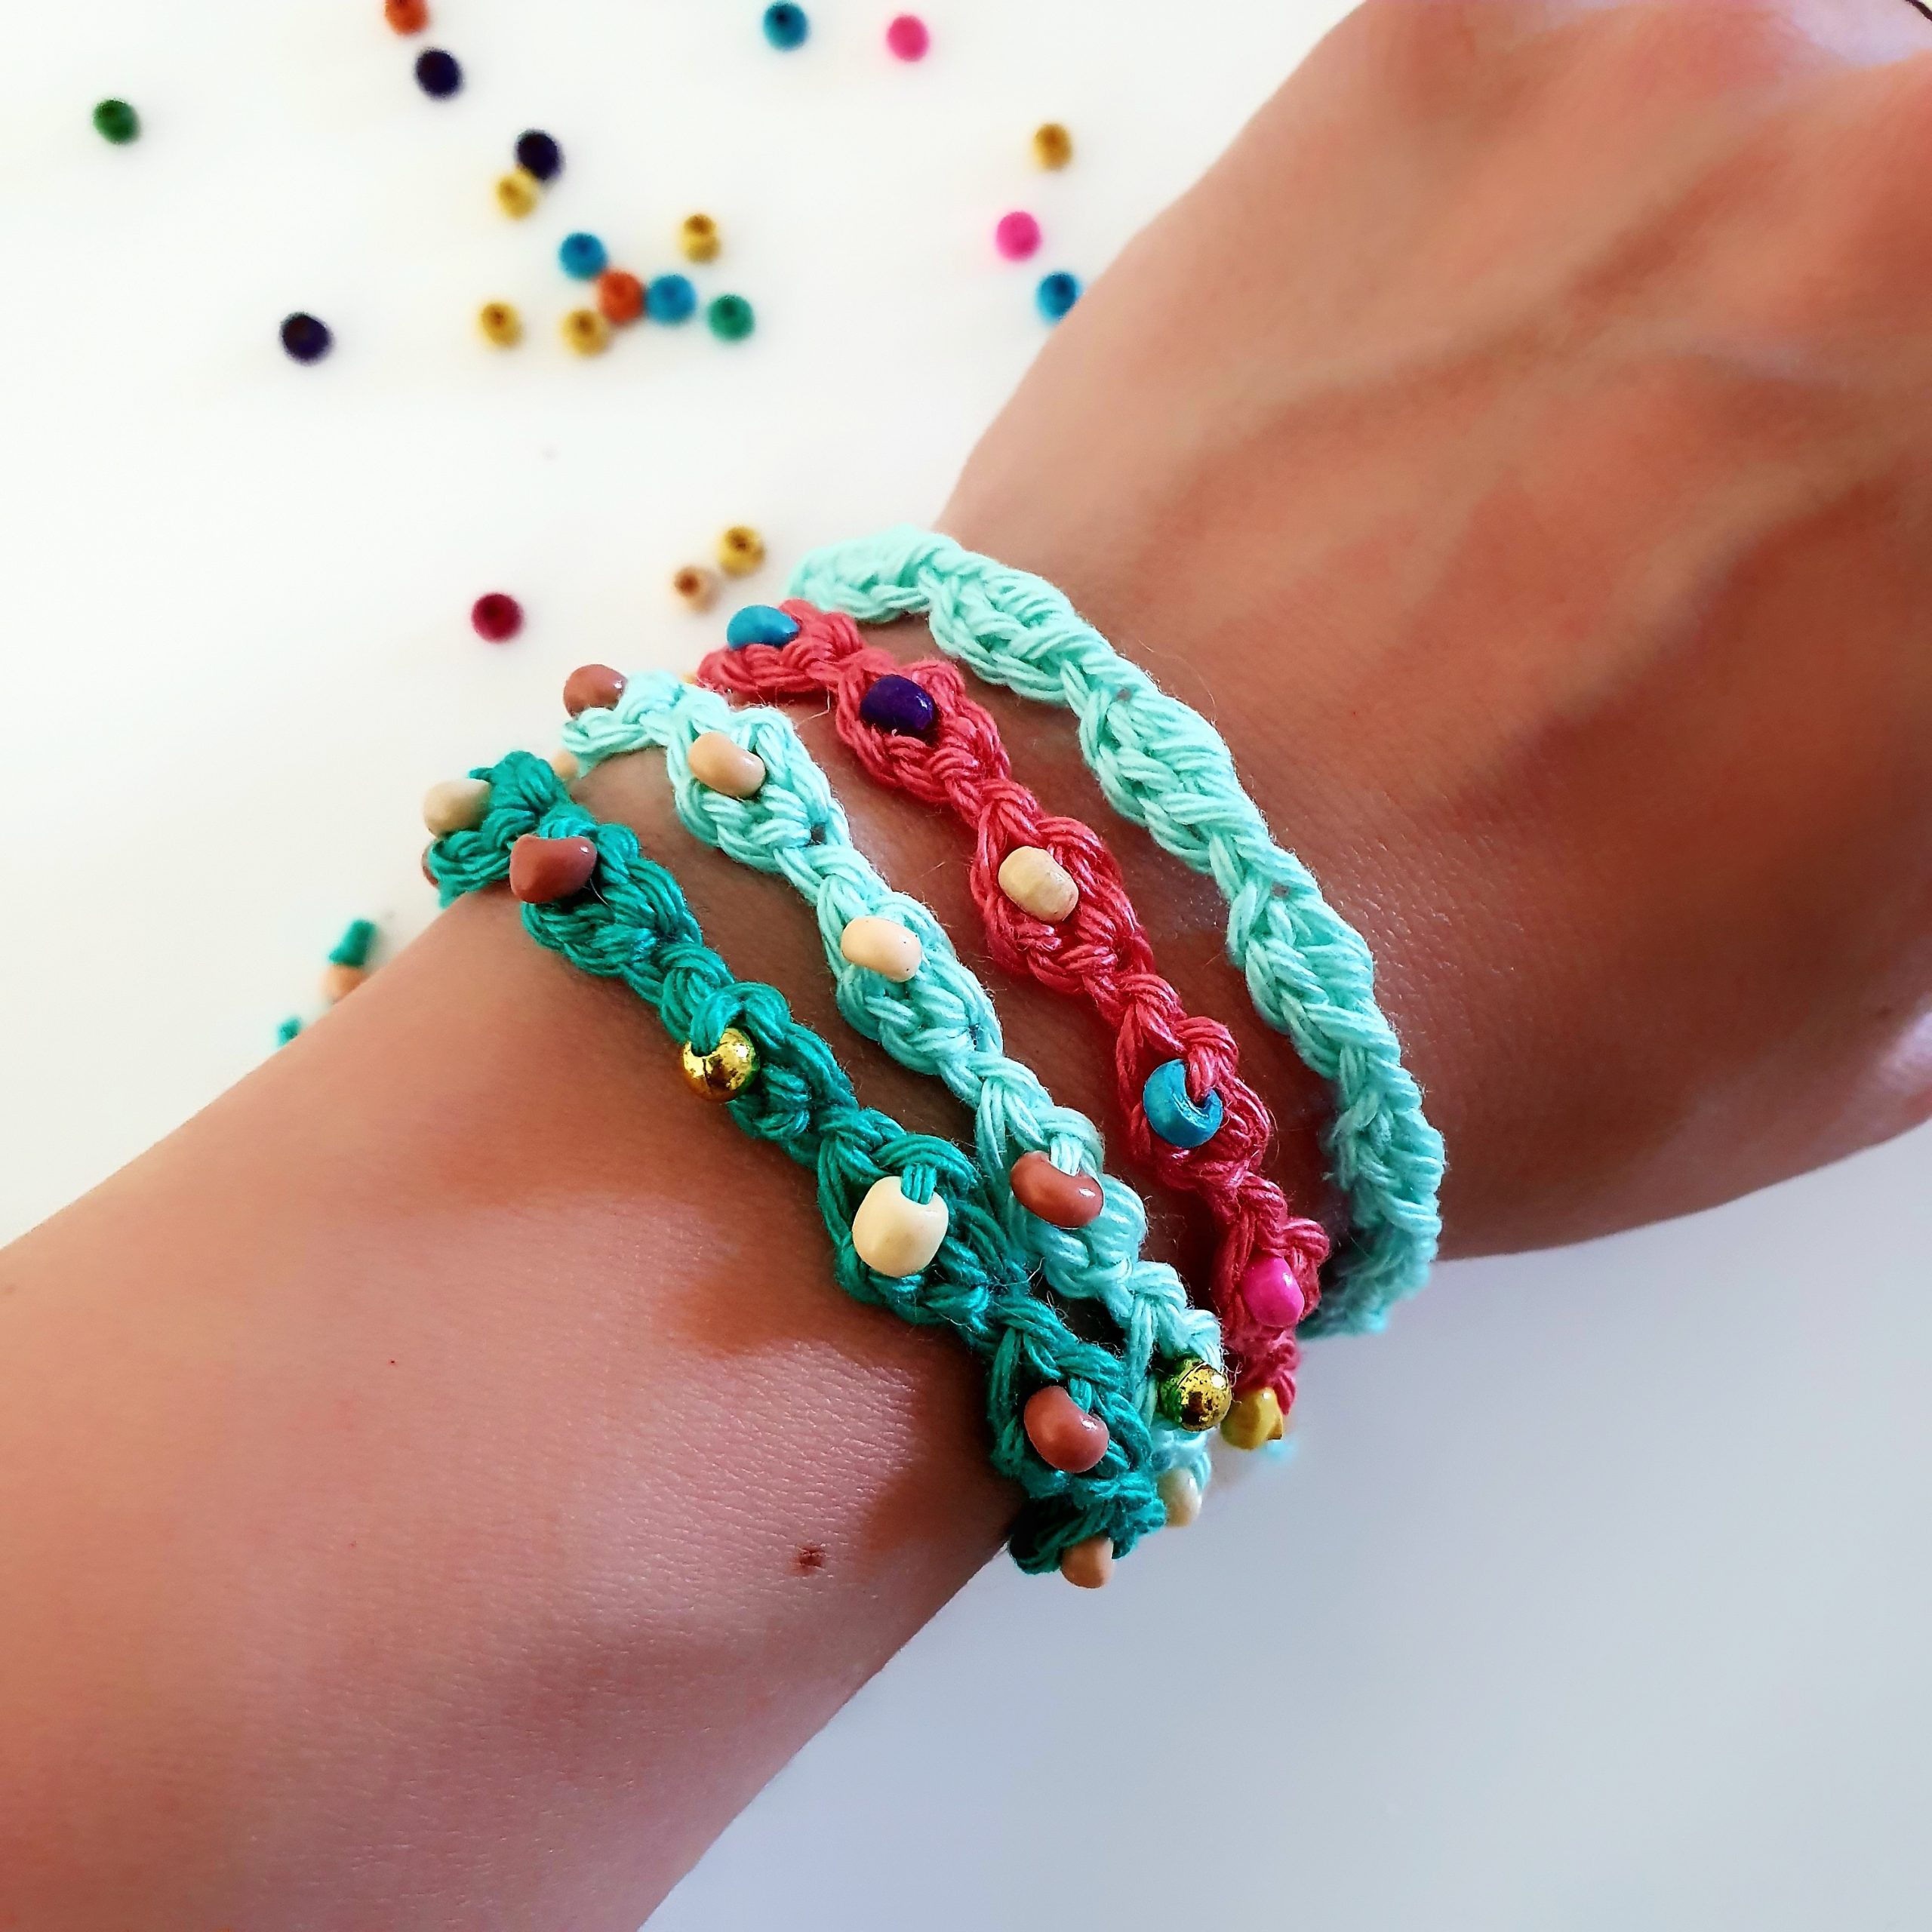 Bead crochet pattern seed bead bracelet tutorial pdf beading | Etsy | Beaded  bracelet patterns, Seed bead bracelets tutorials, Seed bead bracelet  patterns